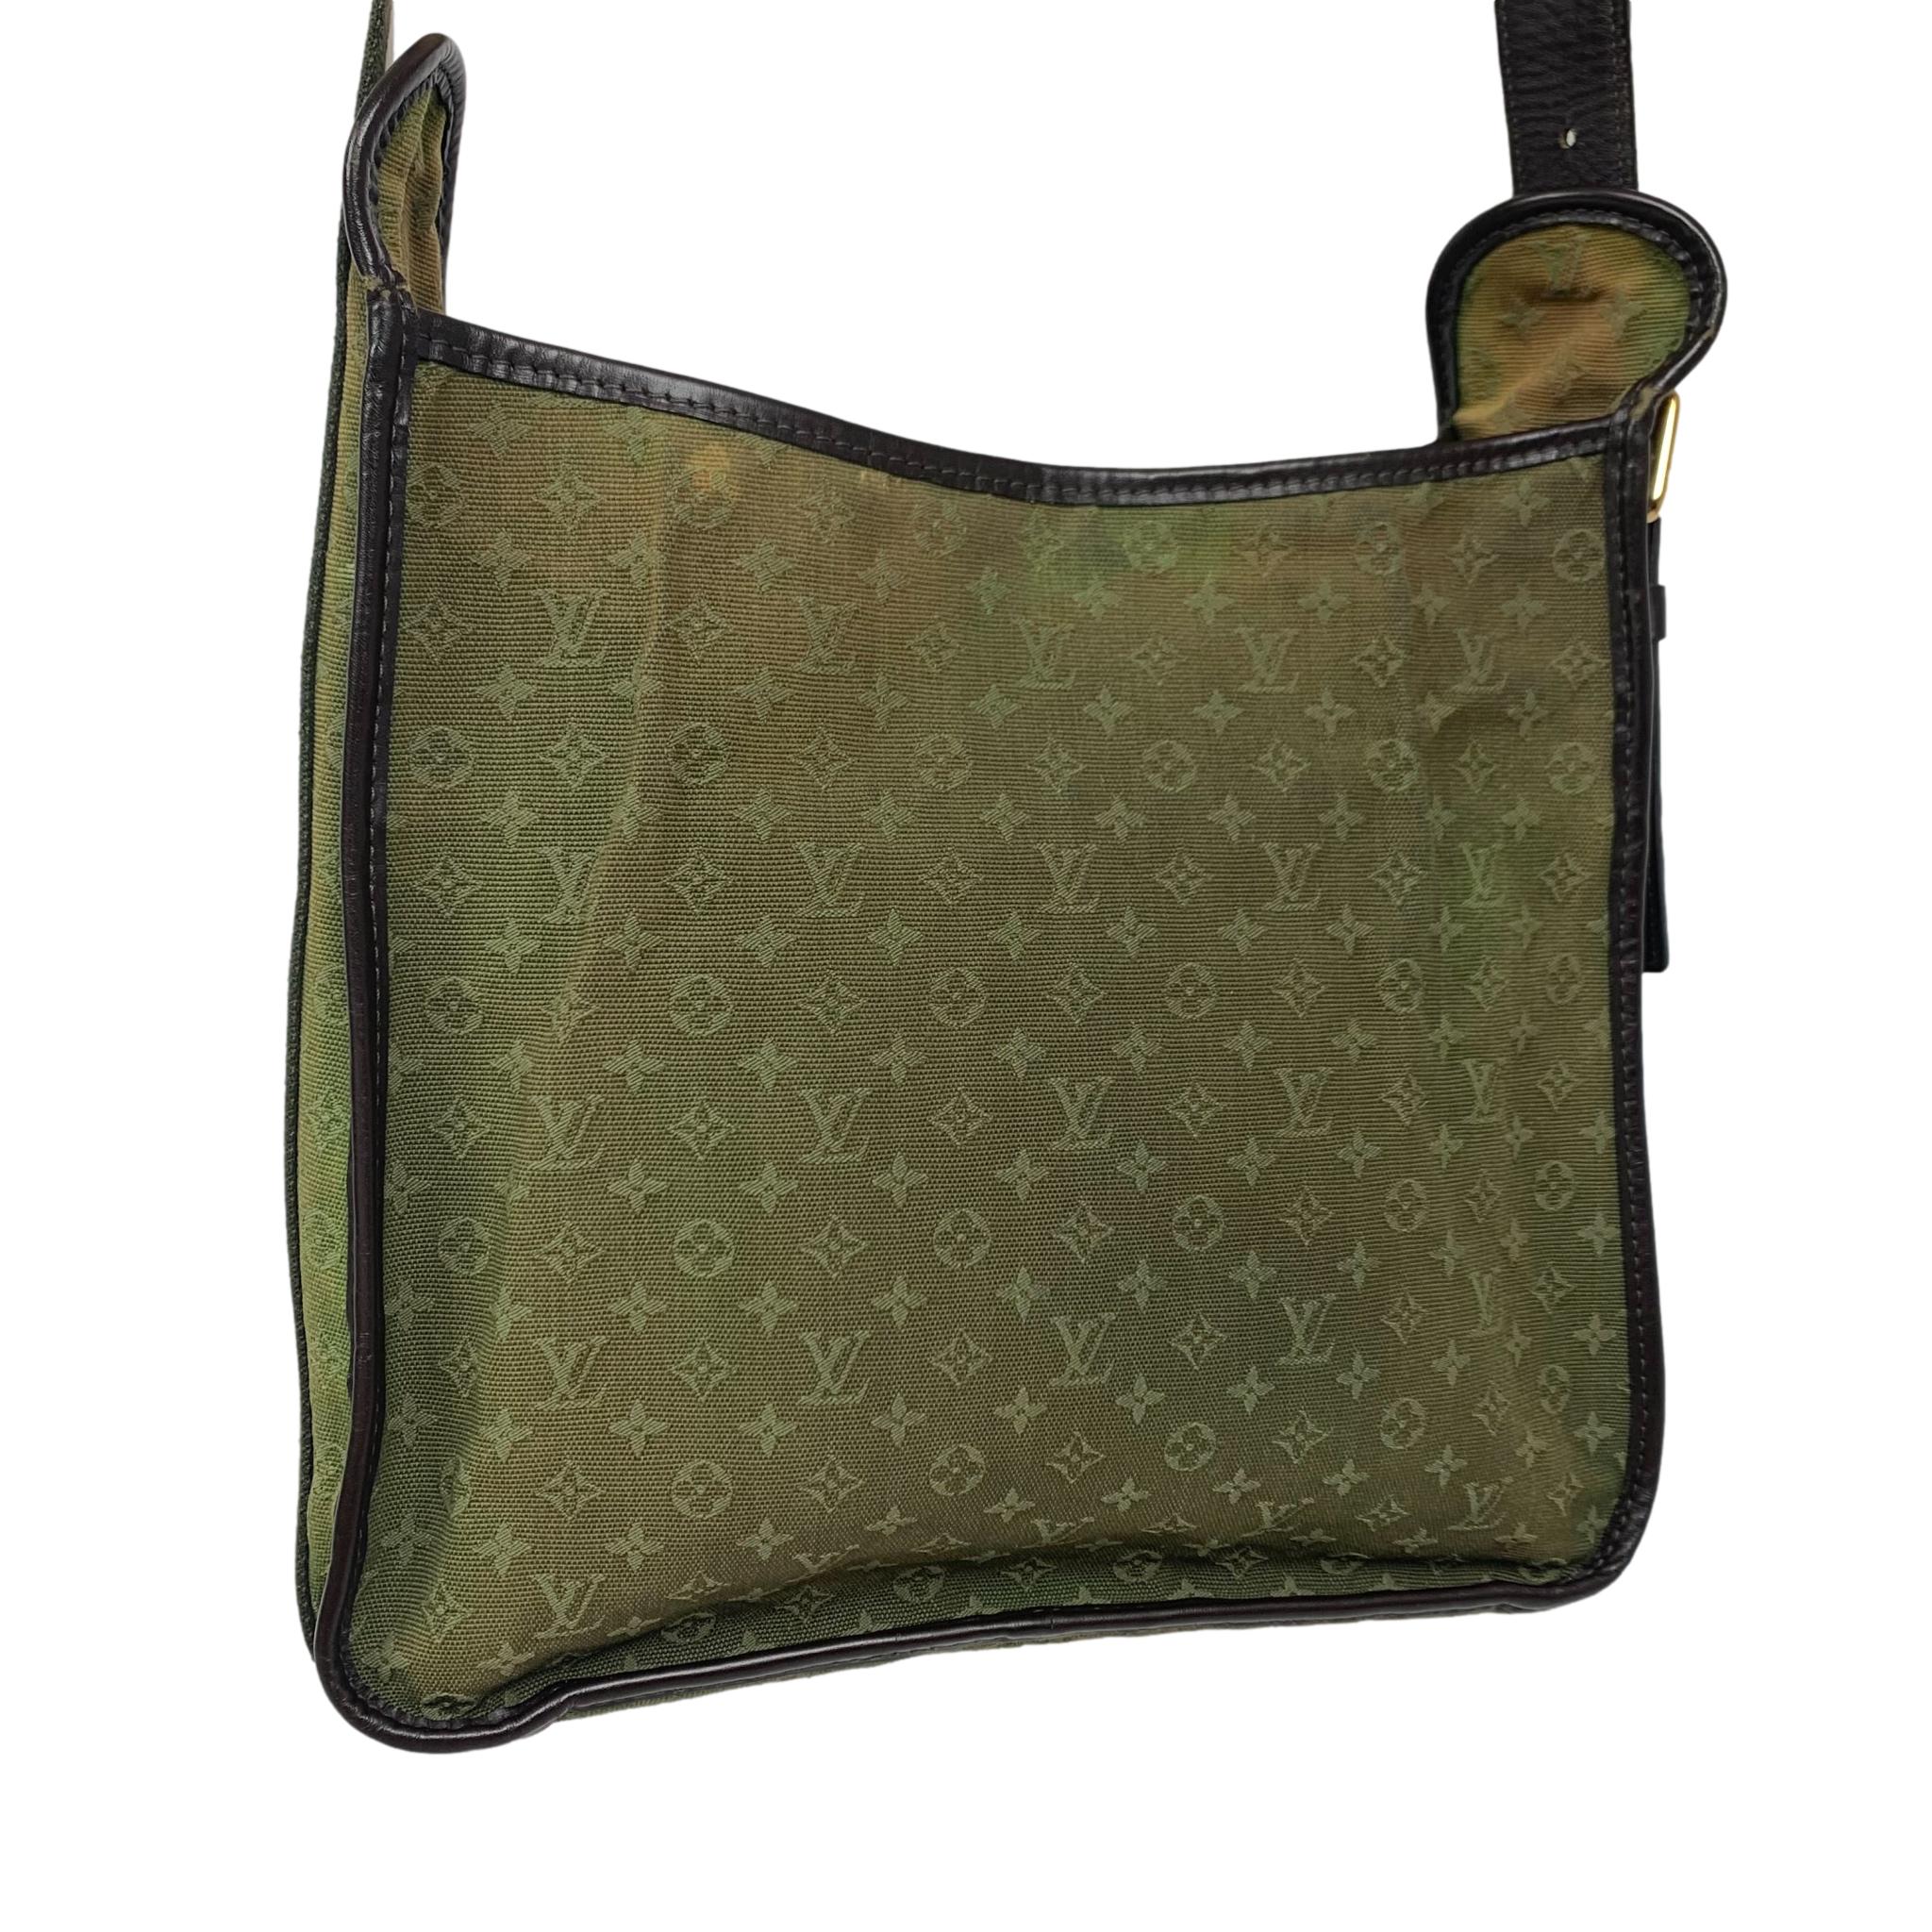 LV UNDER $500 🤯 This Louis Vuitton Mini Lin shoulder bag is